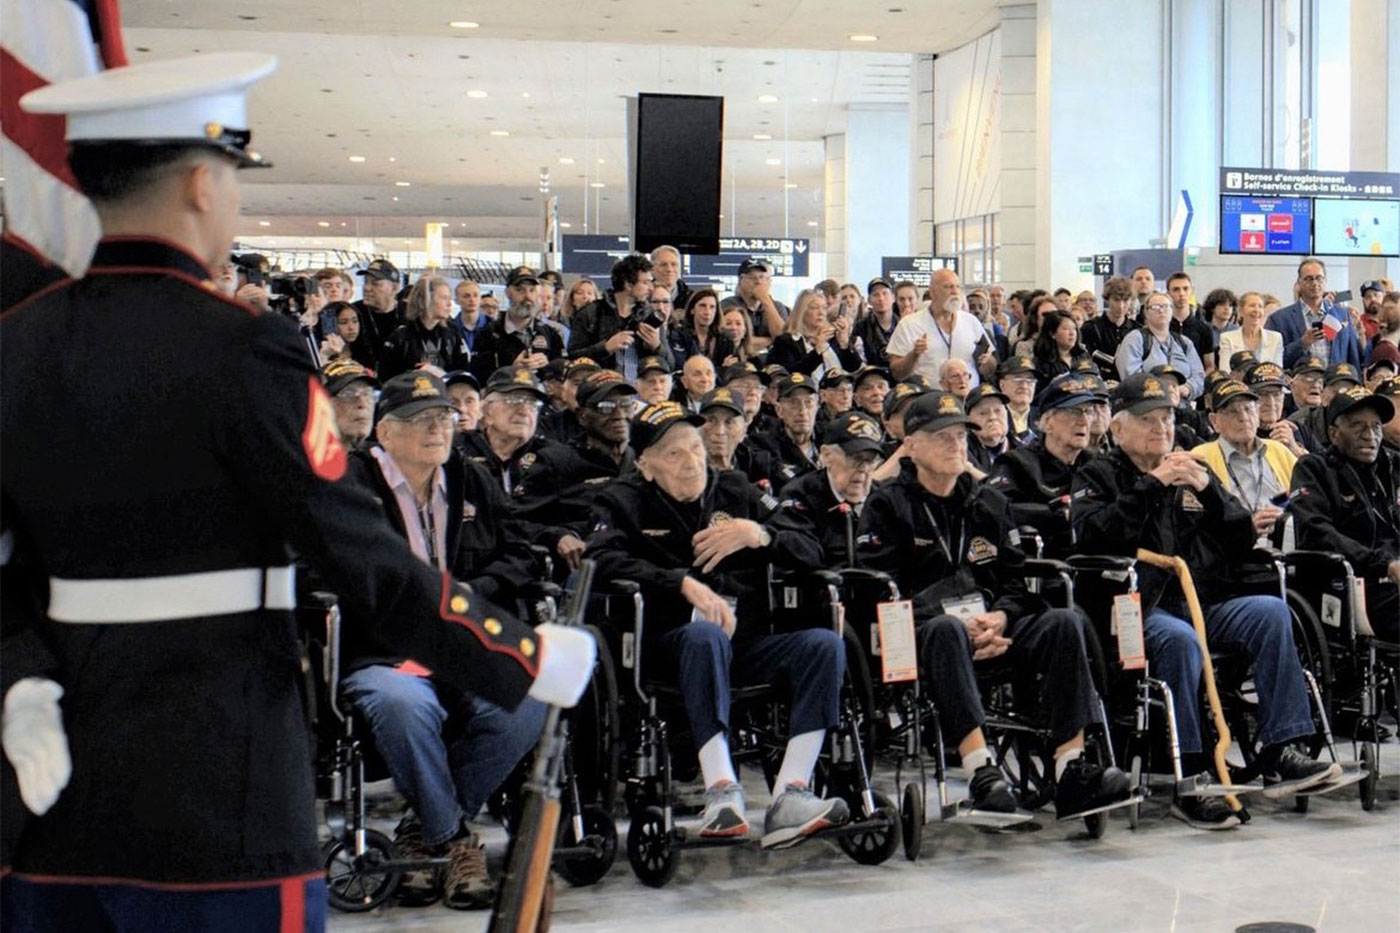 U.S. Veterans at the airport